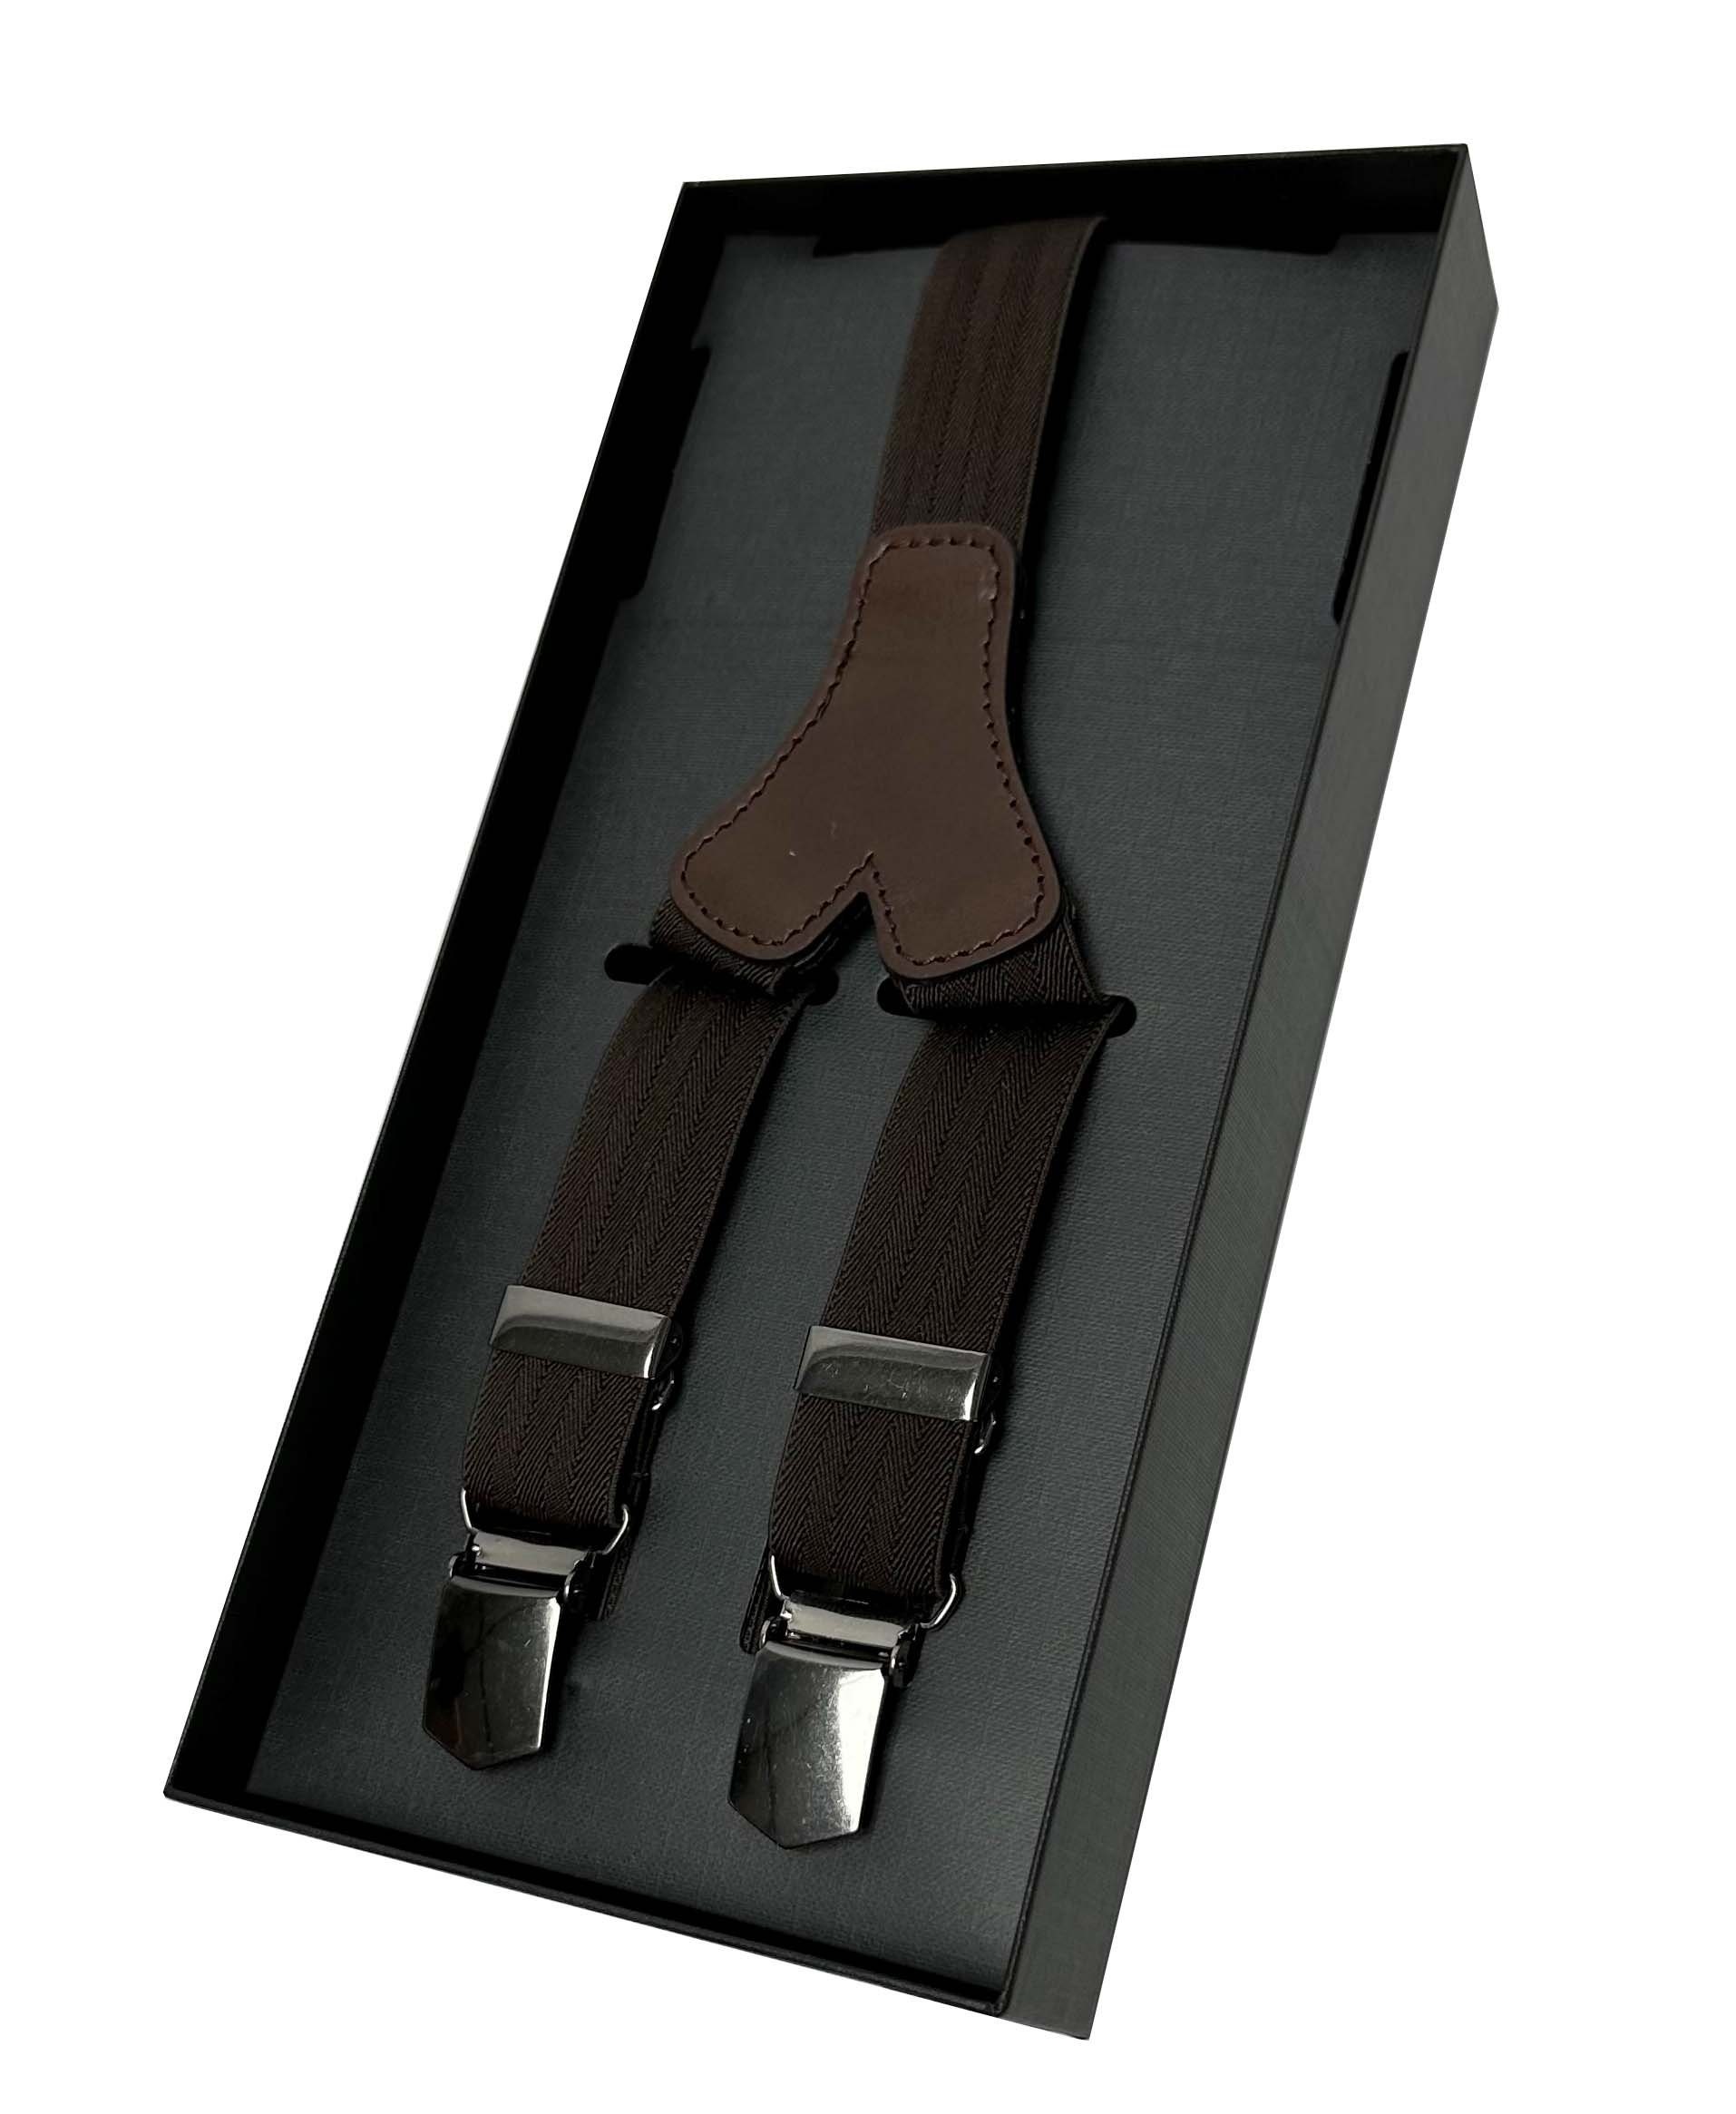 LLOYD Men’s 25 LLOYD-Hosenträger mm Lederrückenteil Belts brown uni Hosenträger Clips